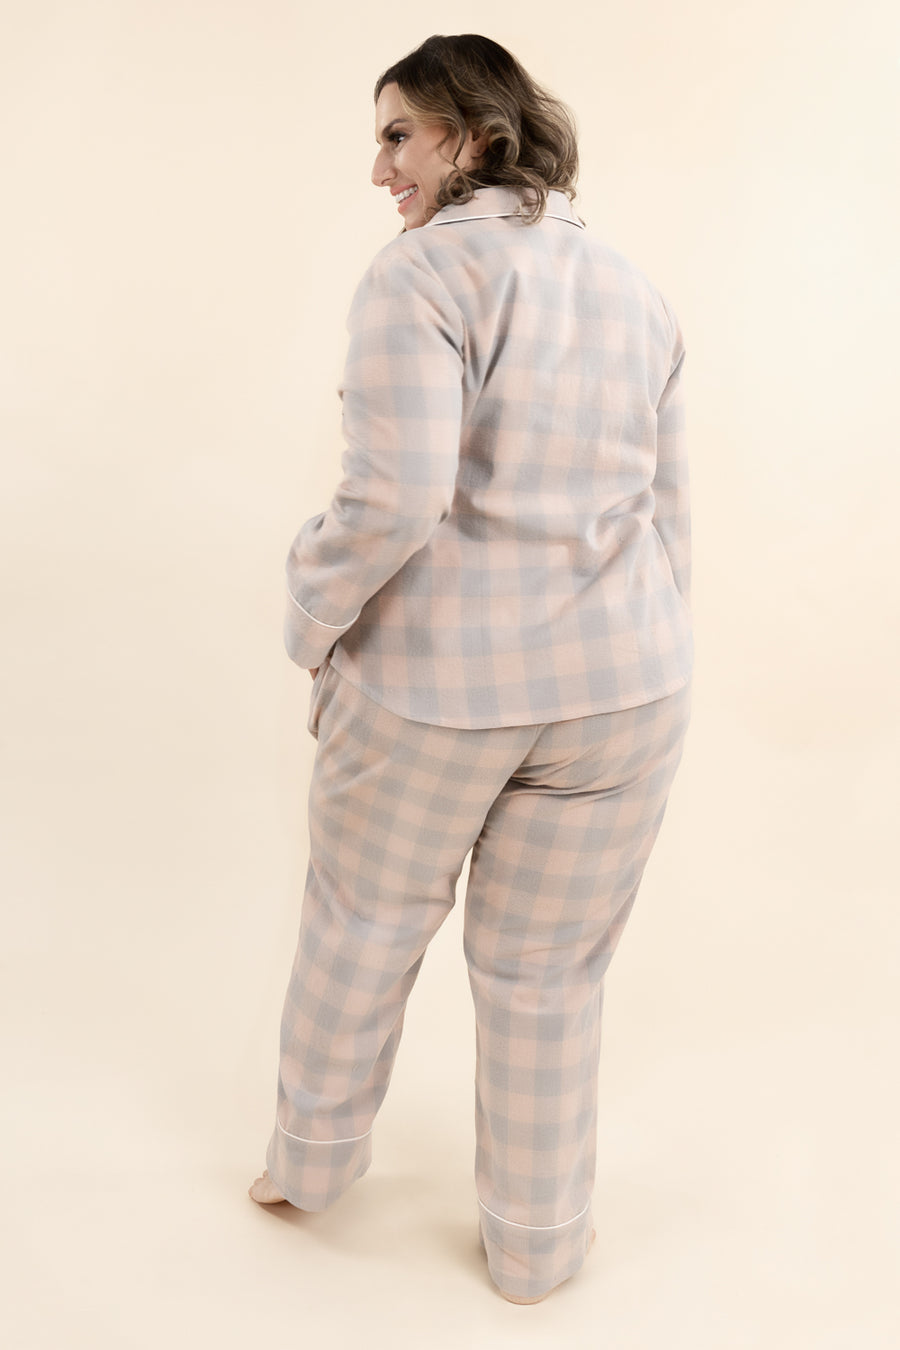 r.e.p.l.i.c.a* LV Pajama Set  Pajama set, Clothes design, Fashion